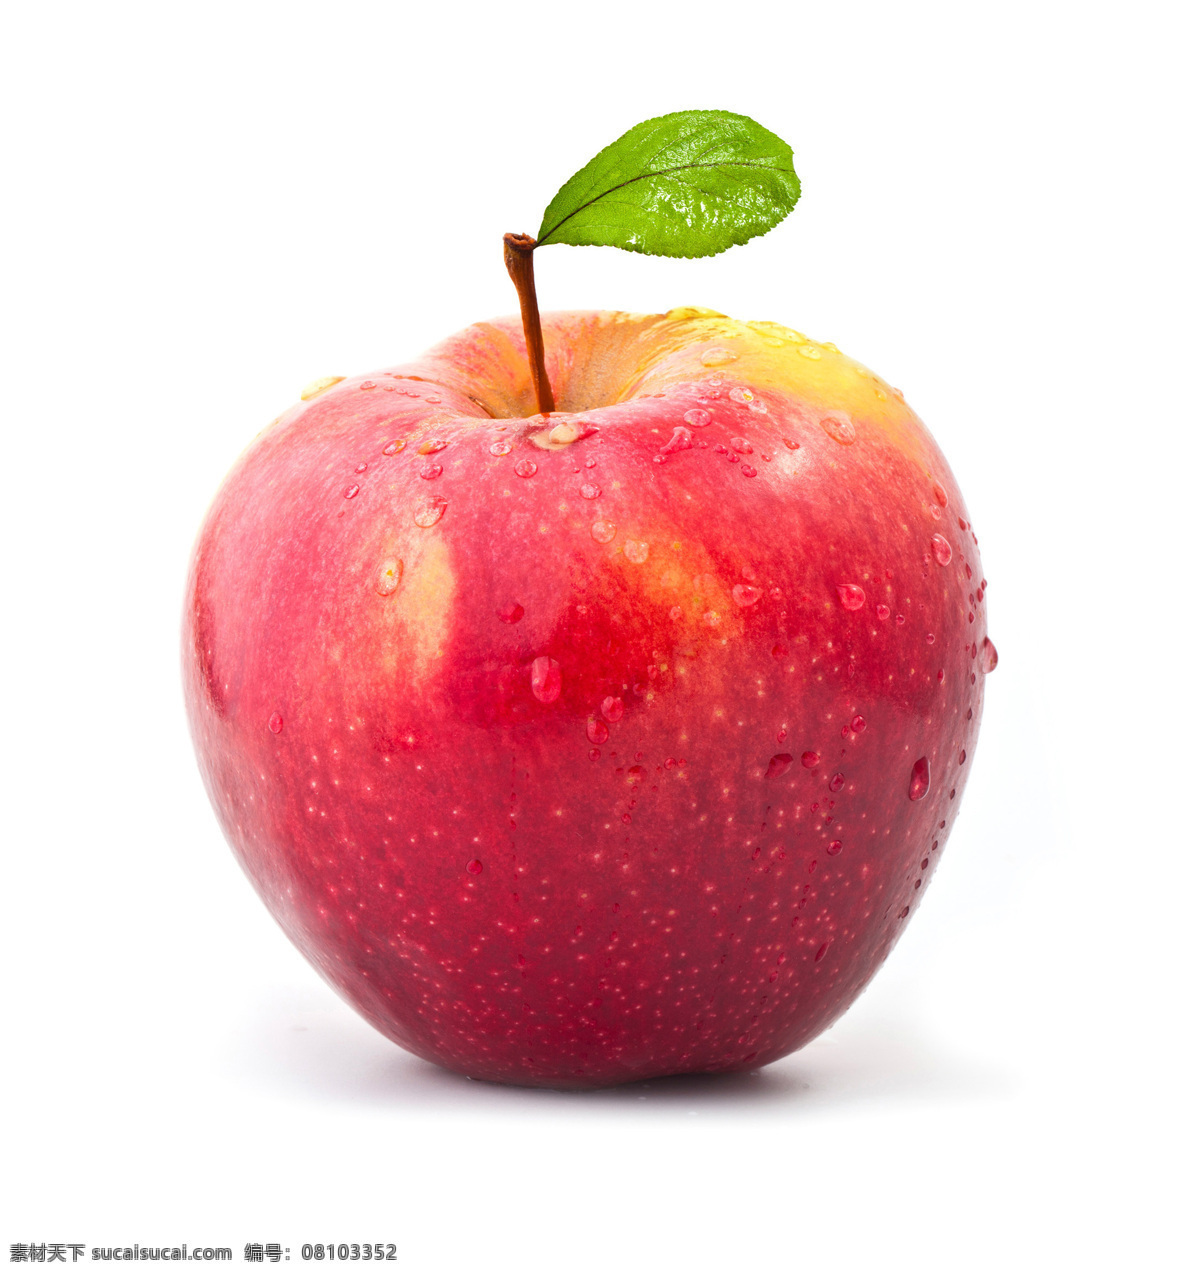 苹果 蛇果 红富士 苹果园 新疆苹果 阿克苏苹果 冰糖心 水果 生物世界